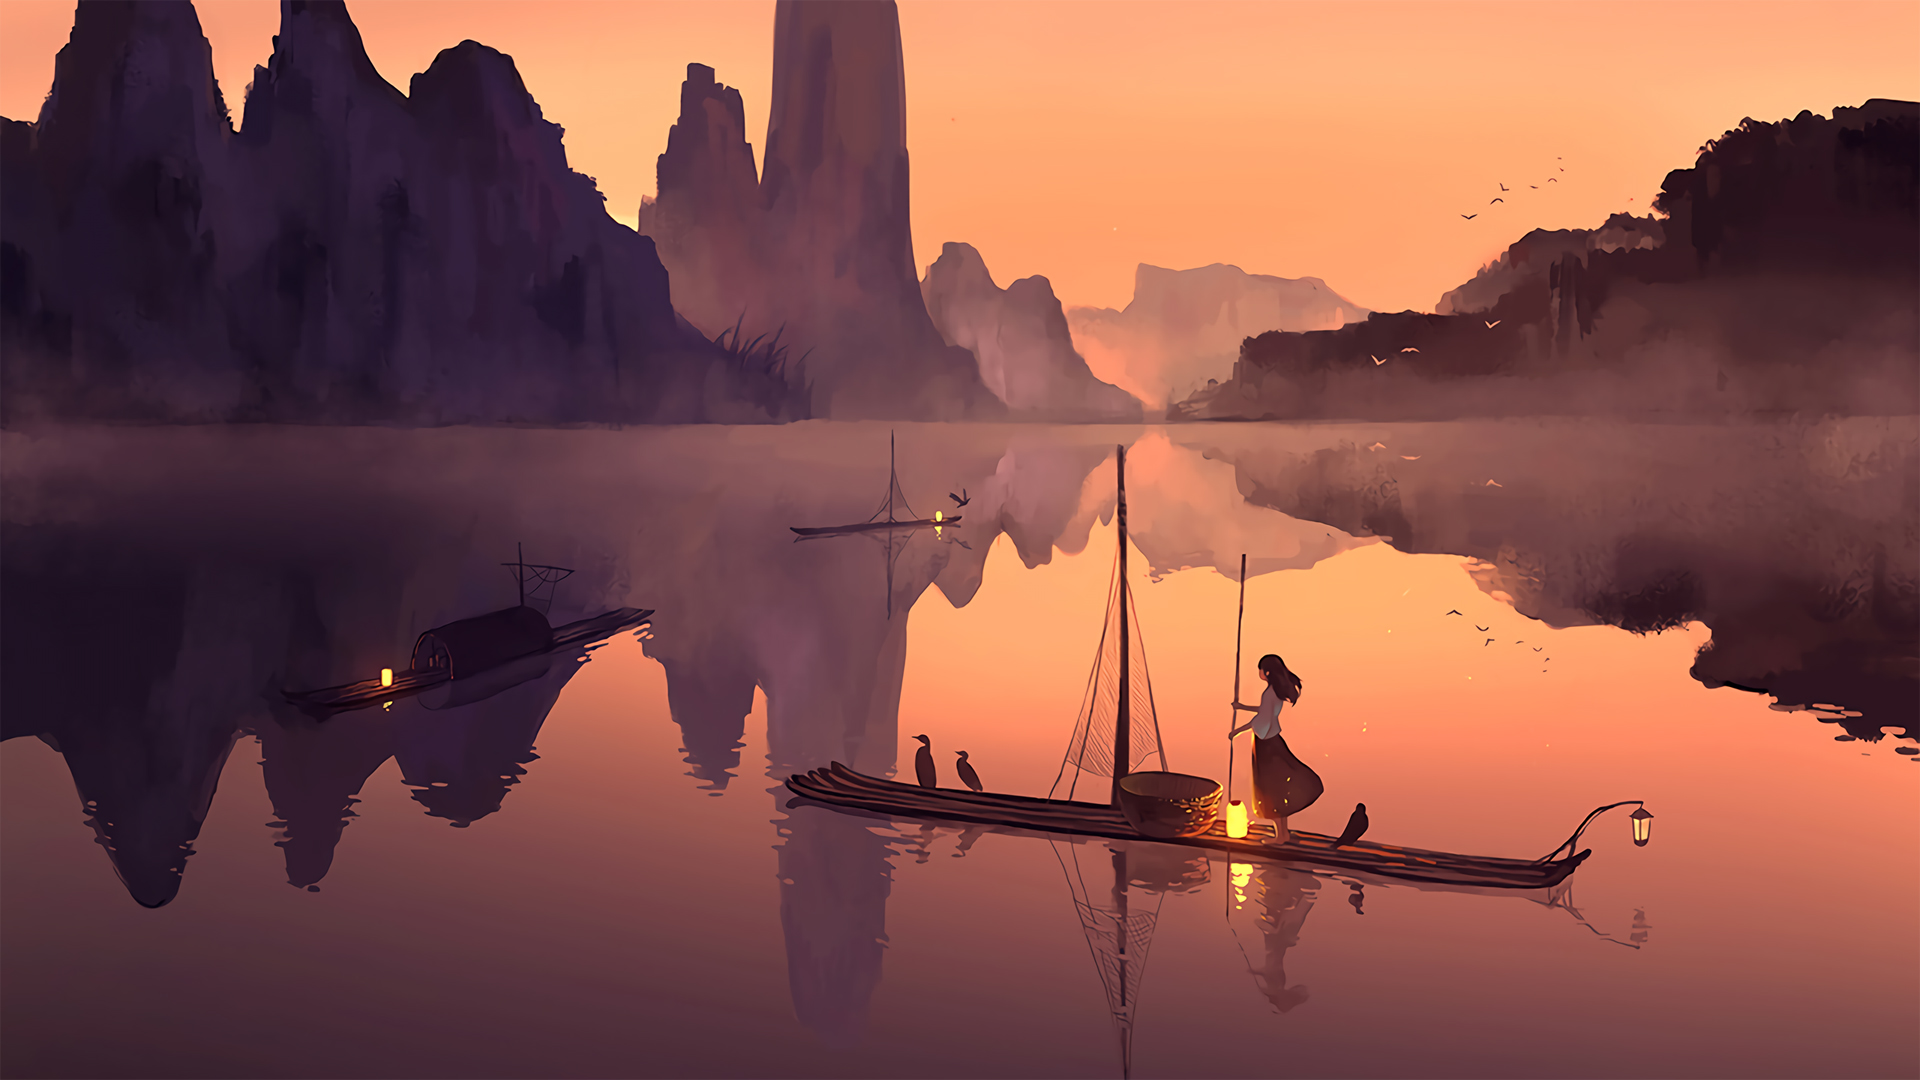 落日下 <span style='color:red;'>山水</span>湖泊中 一个划着竹排的渔家少女唯美动漫手绘壁纸图片 黄昏